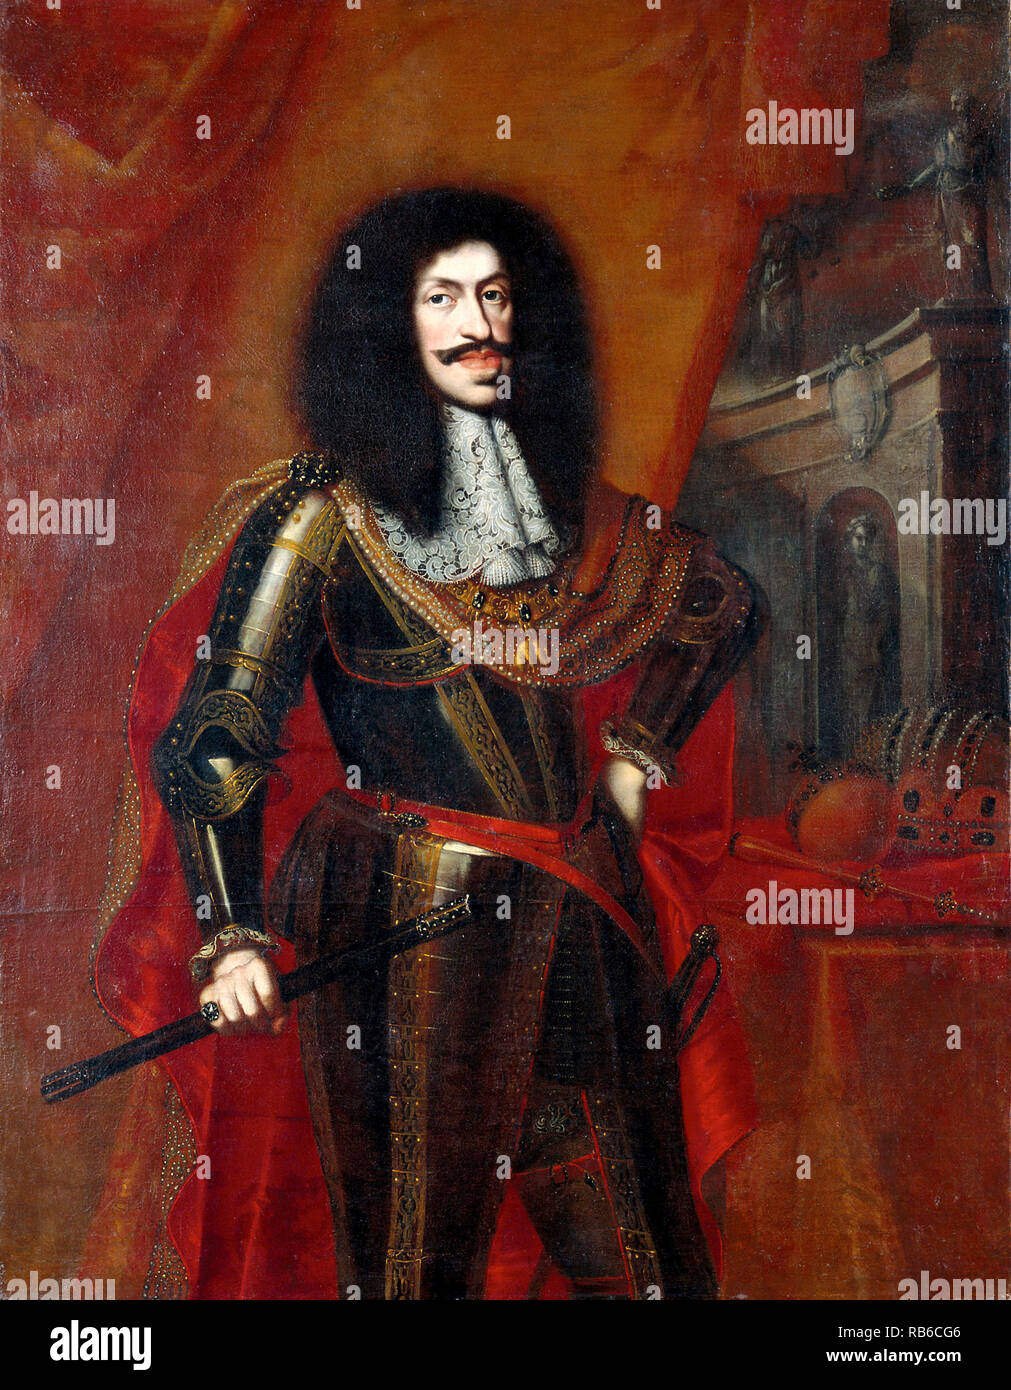 Léopold I (1640 - 1705) Le Saint Empire Romain Germanique, roi de Hongrie, de la Croatie, et la Bohême. Banque D'Images